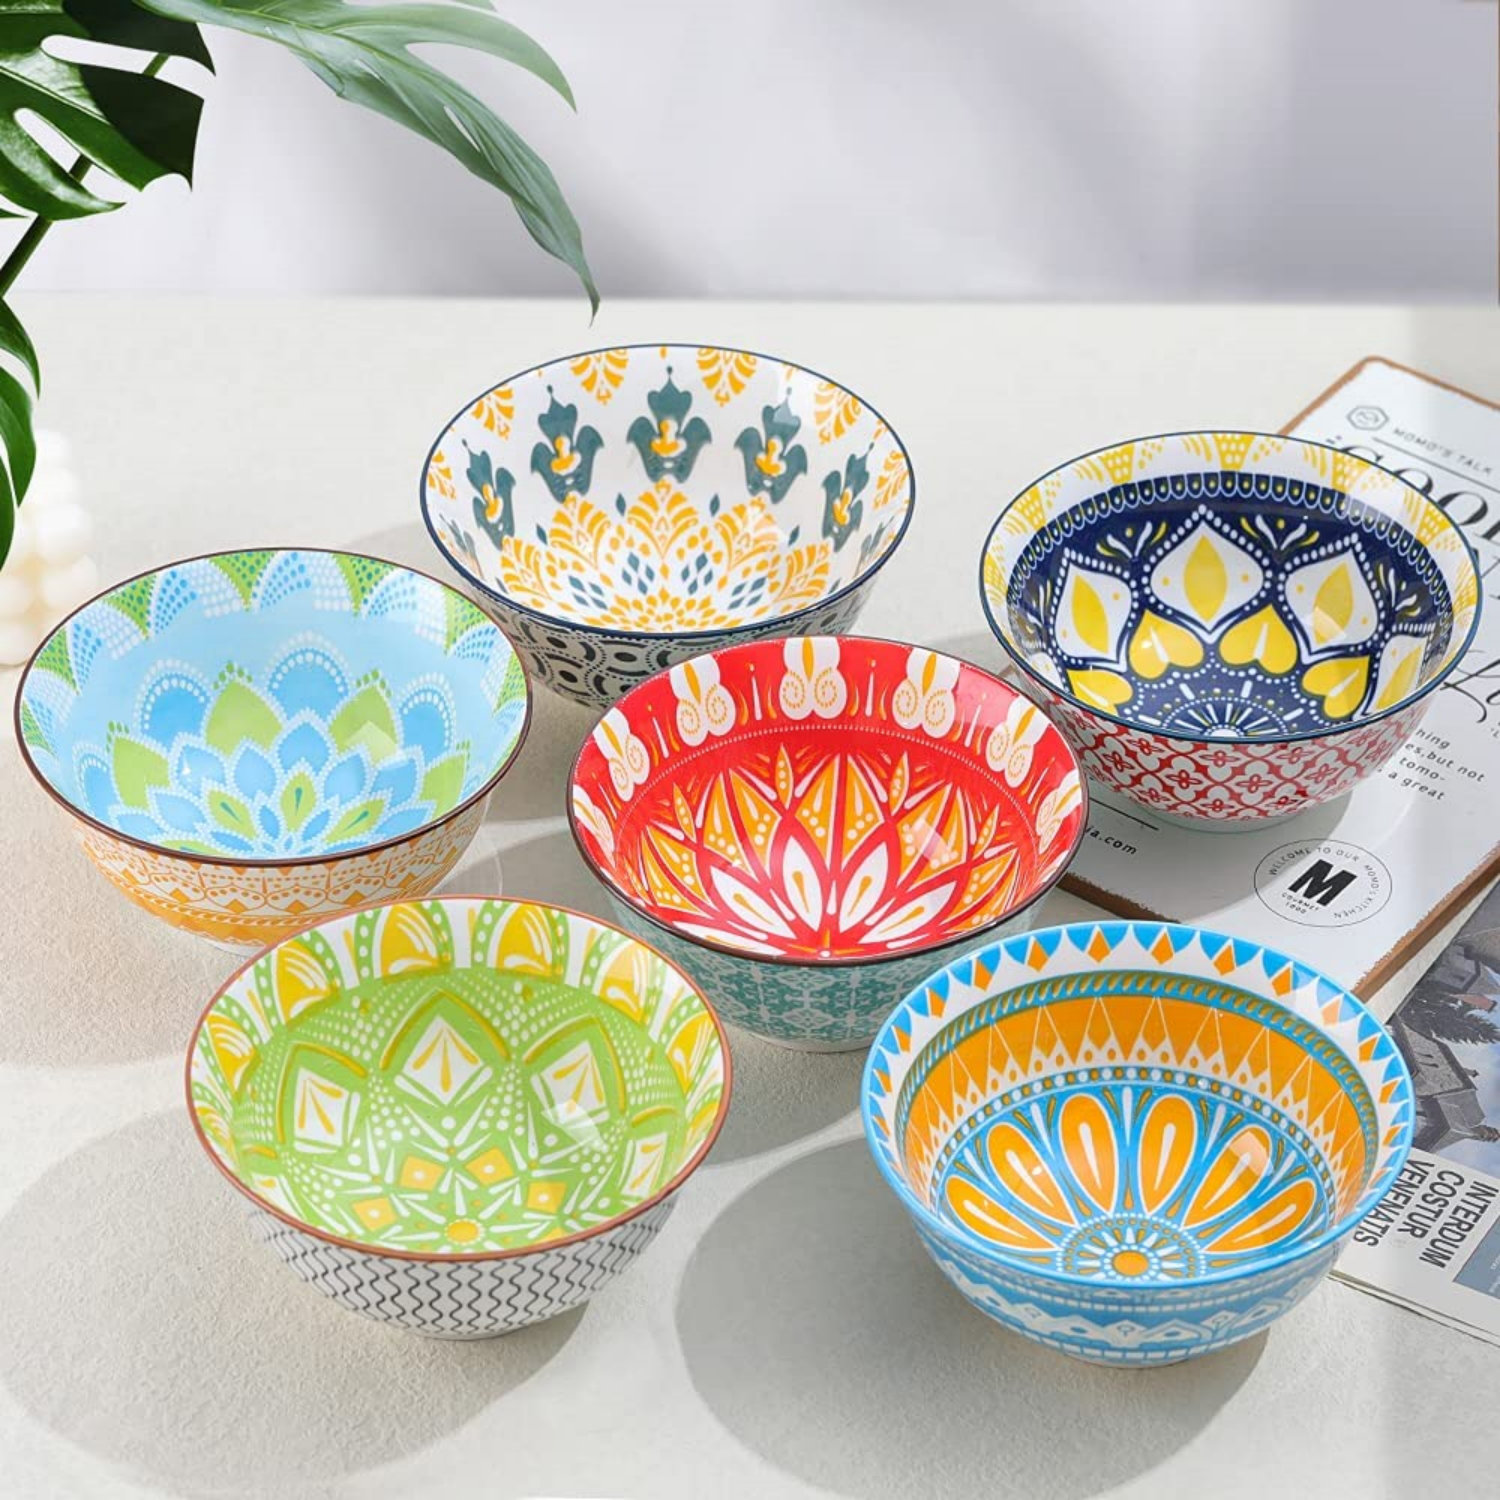 White Essential Cereal Bowls Set – Euro Ceramica